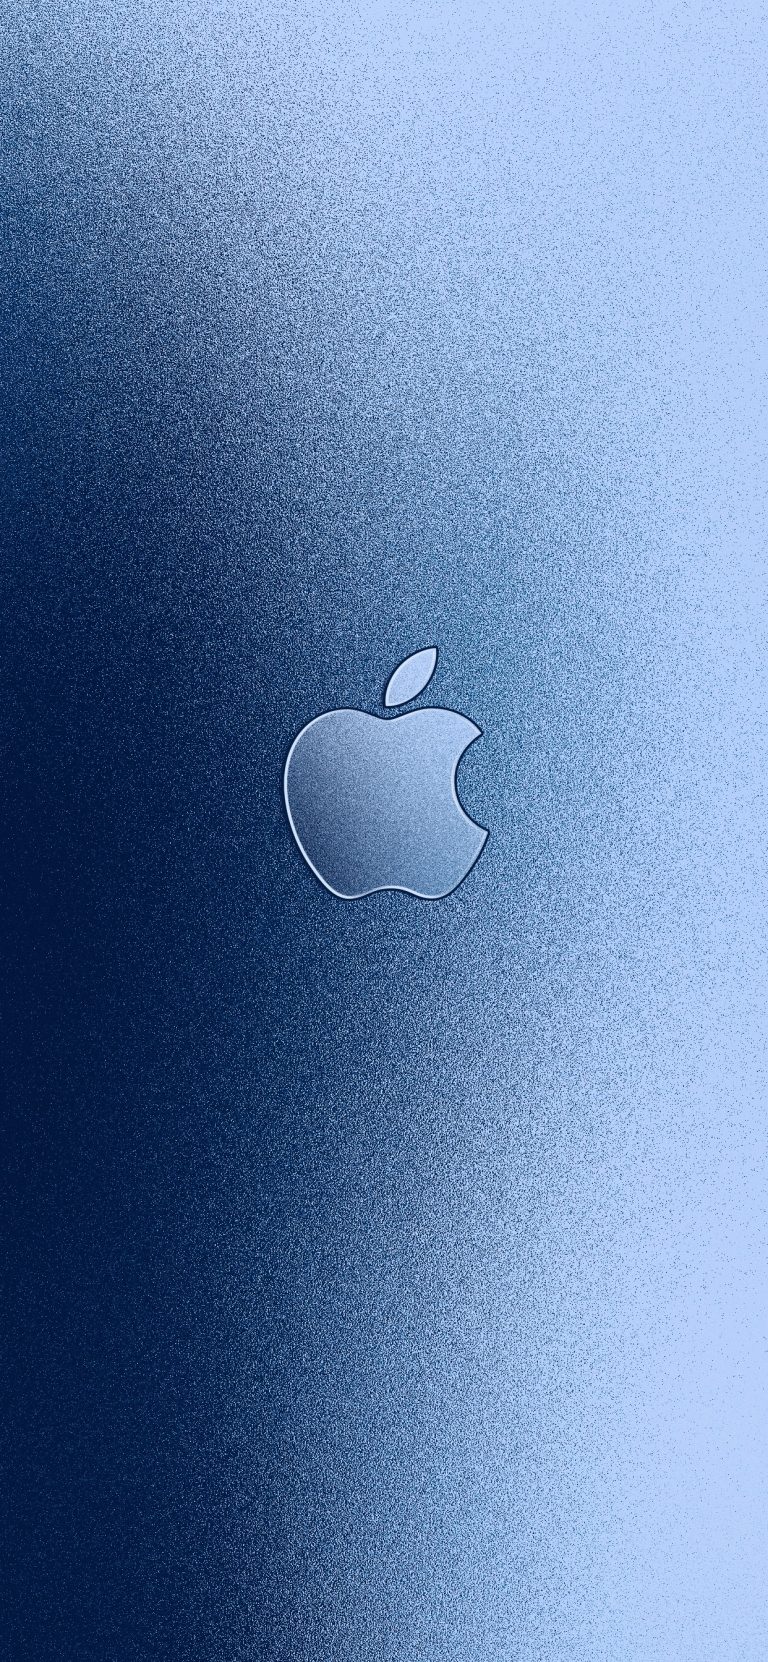 Ảnh Nền Đẹp Chất Lượng Cao: Logo Apple Màu Nhôm | Laptrinhx